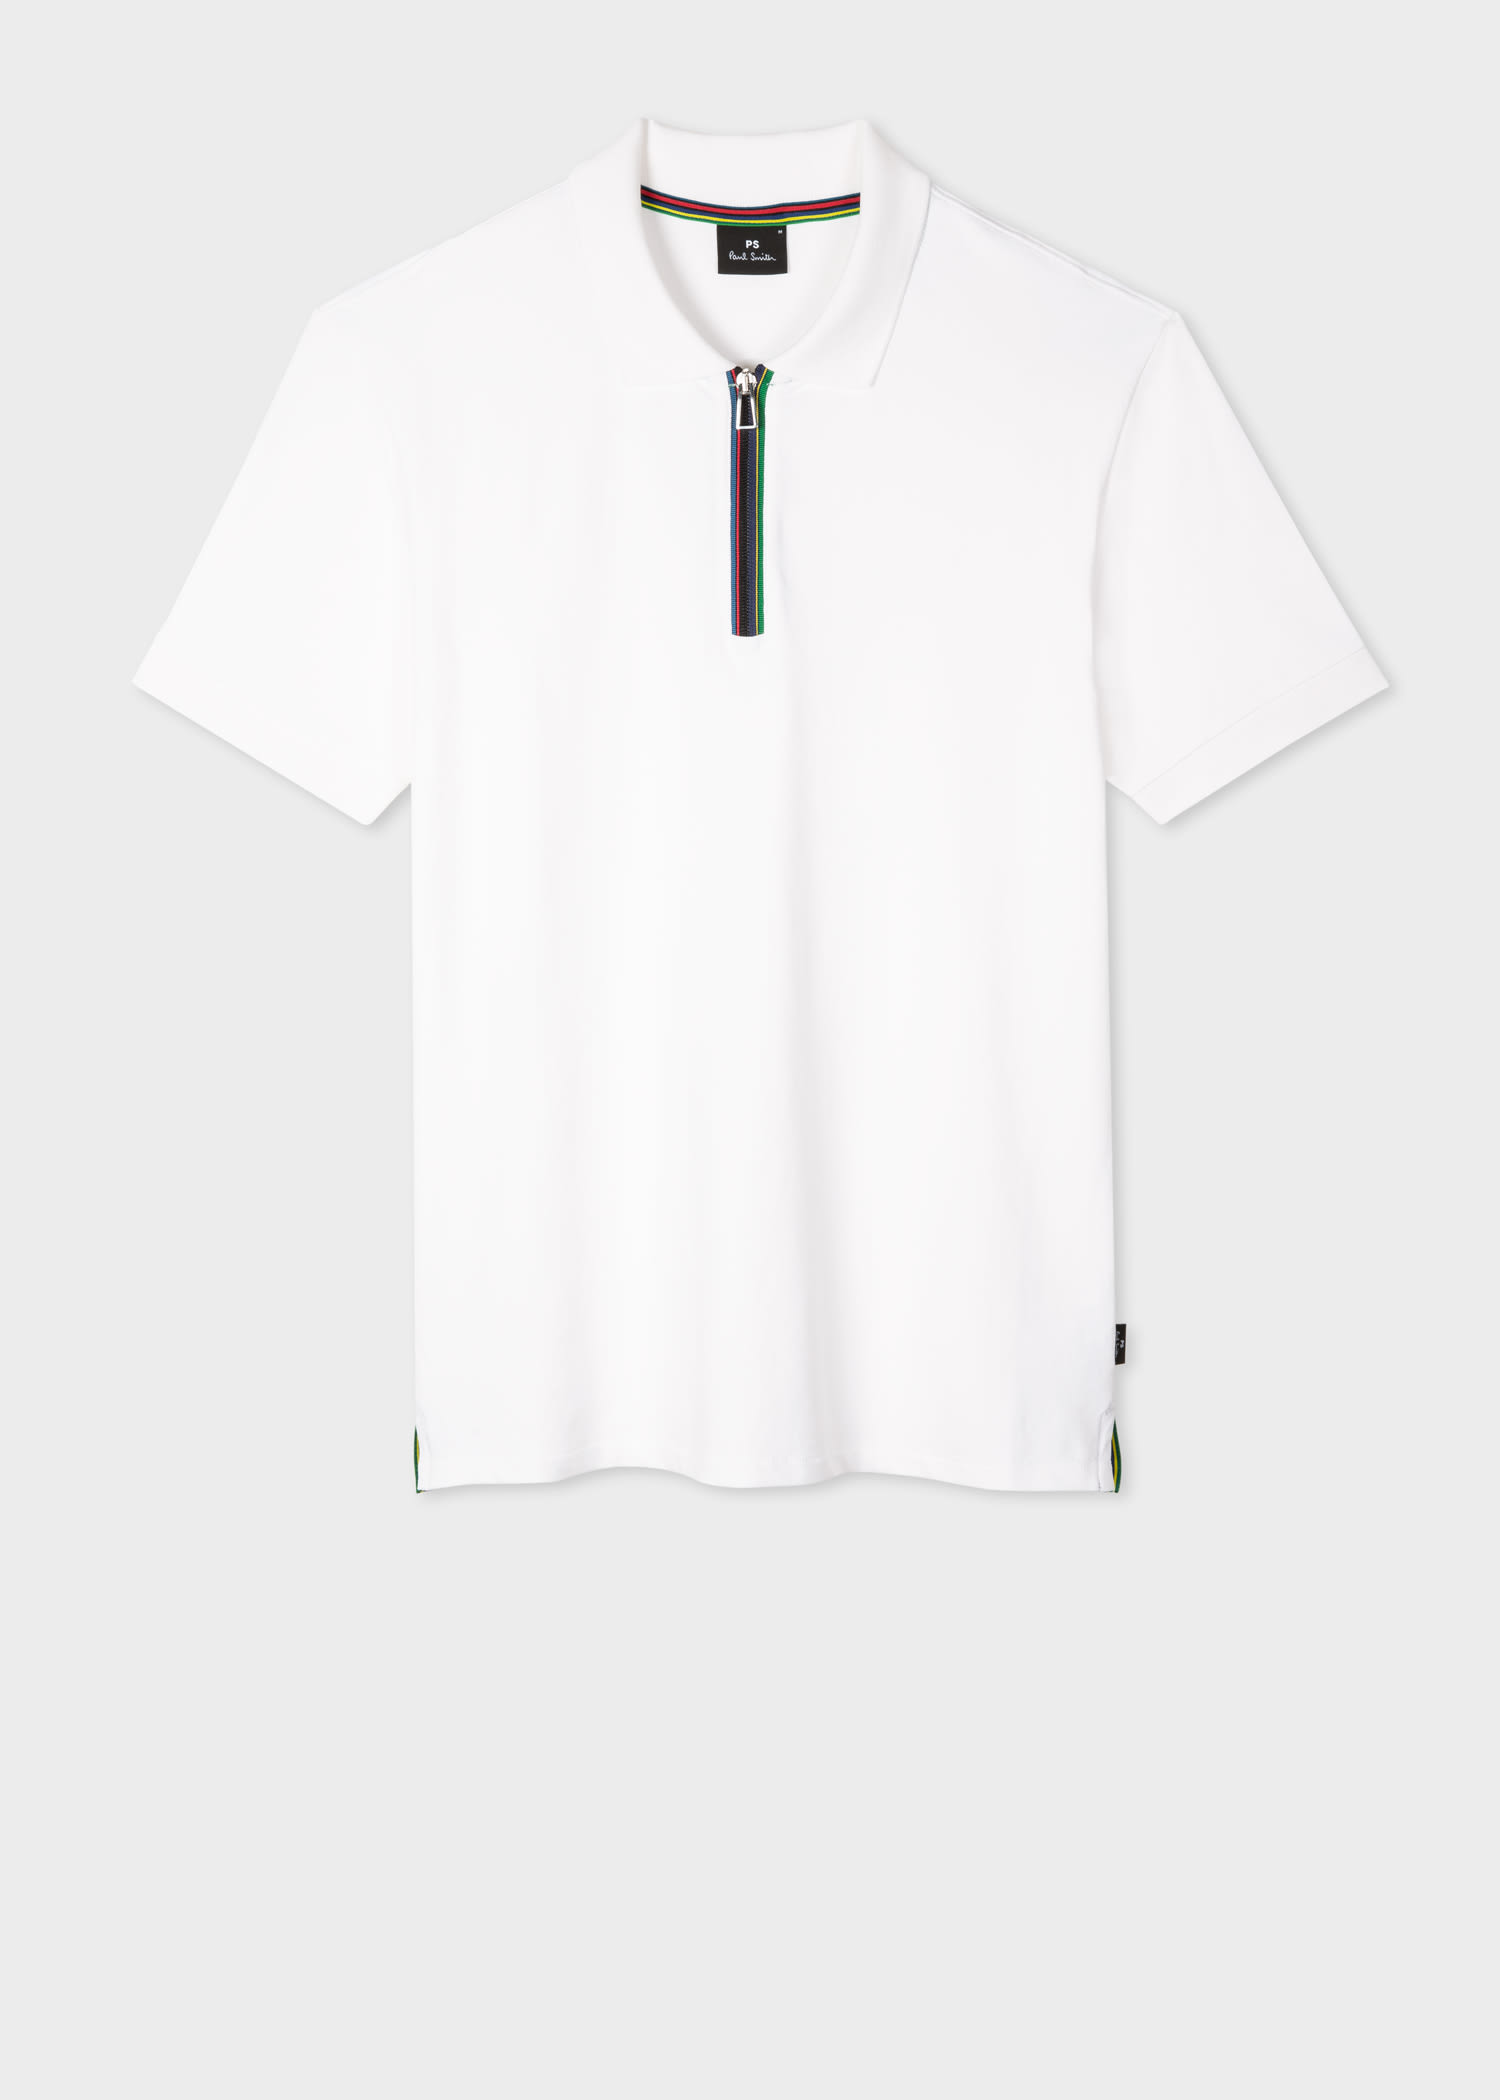 Men's Designer Polo Shirts | Short & Long Sleeve Polos - Paul Smith